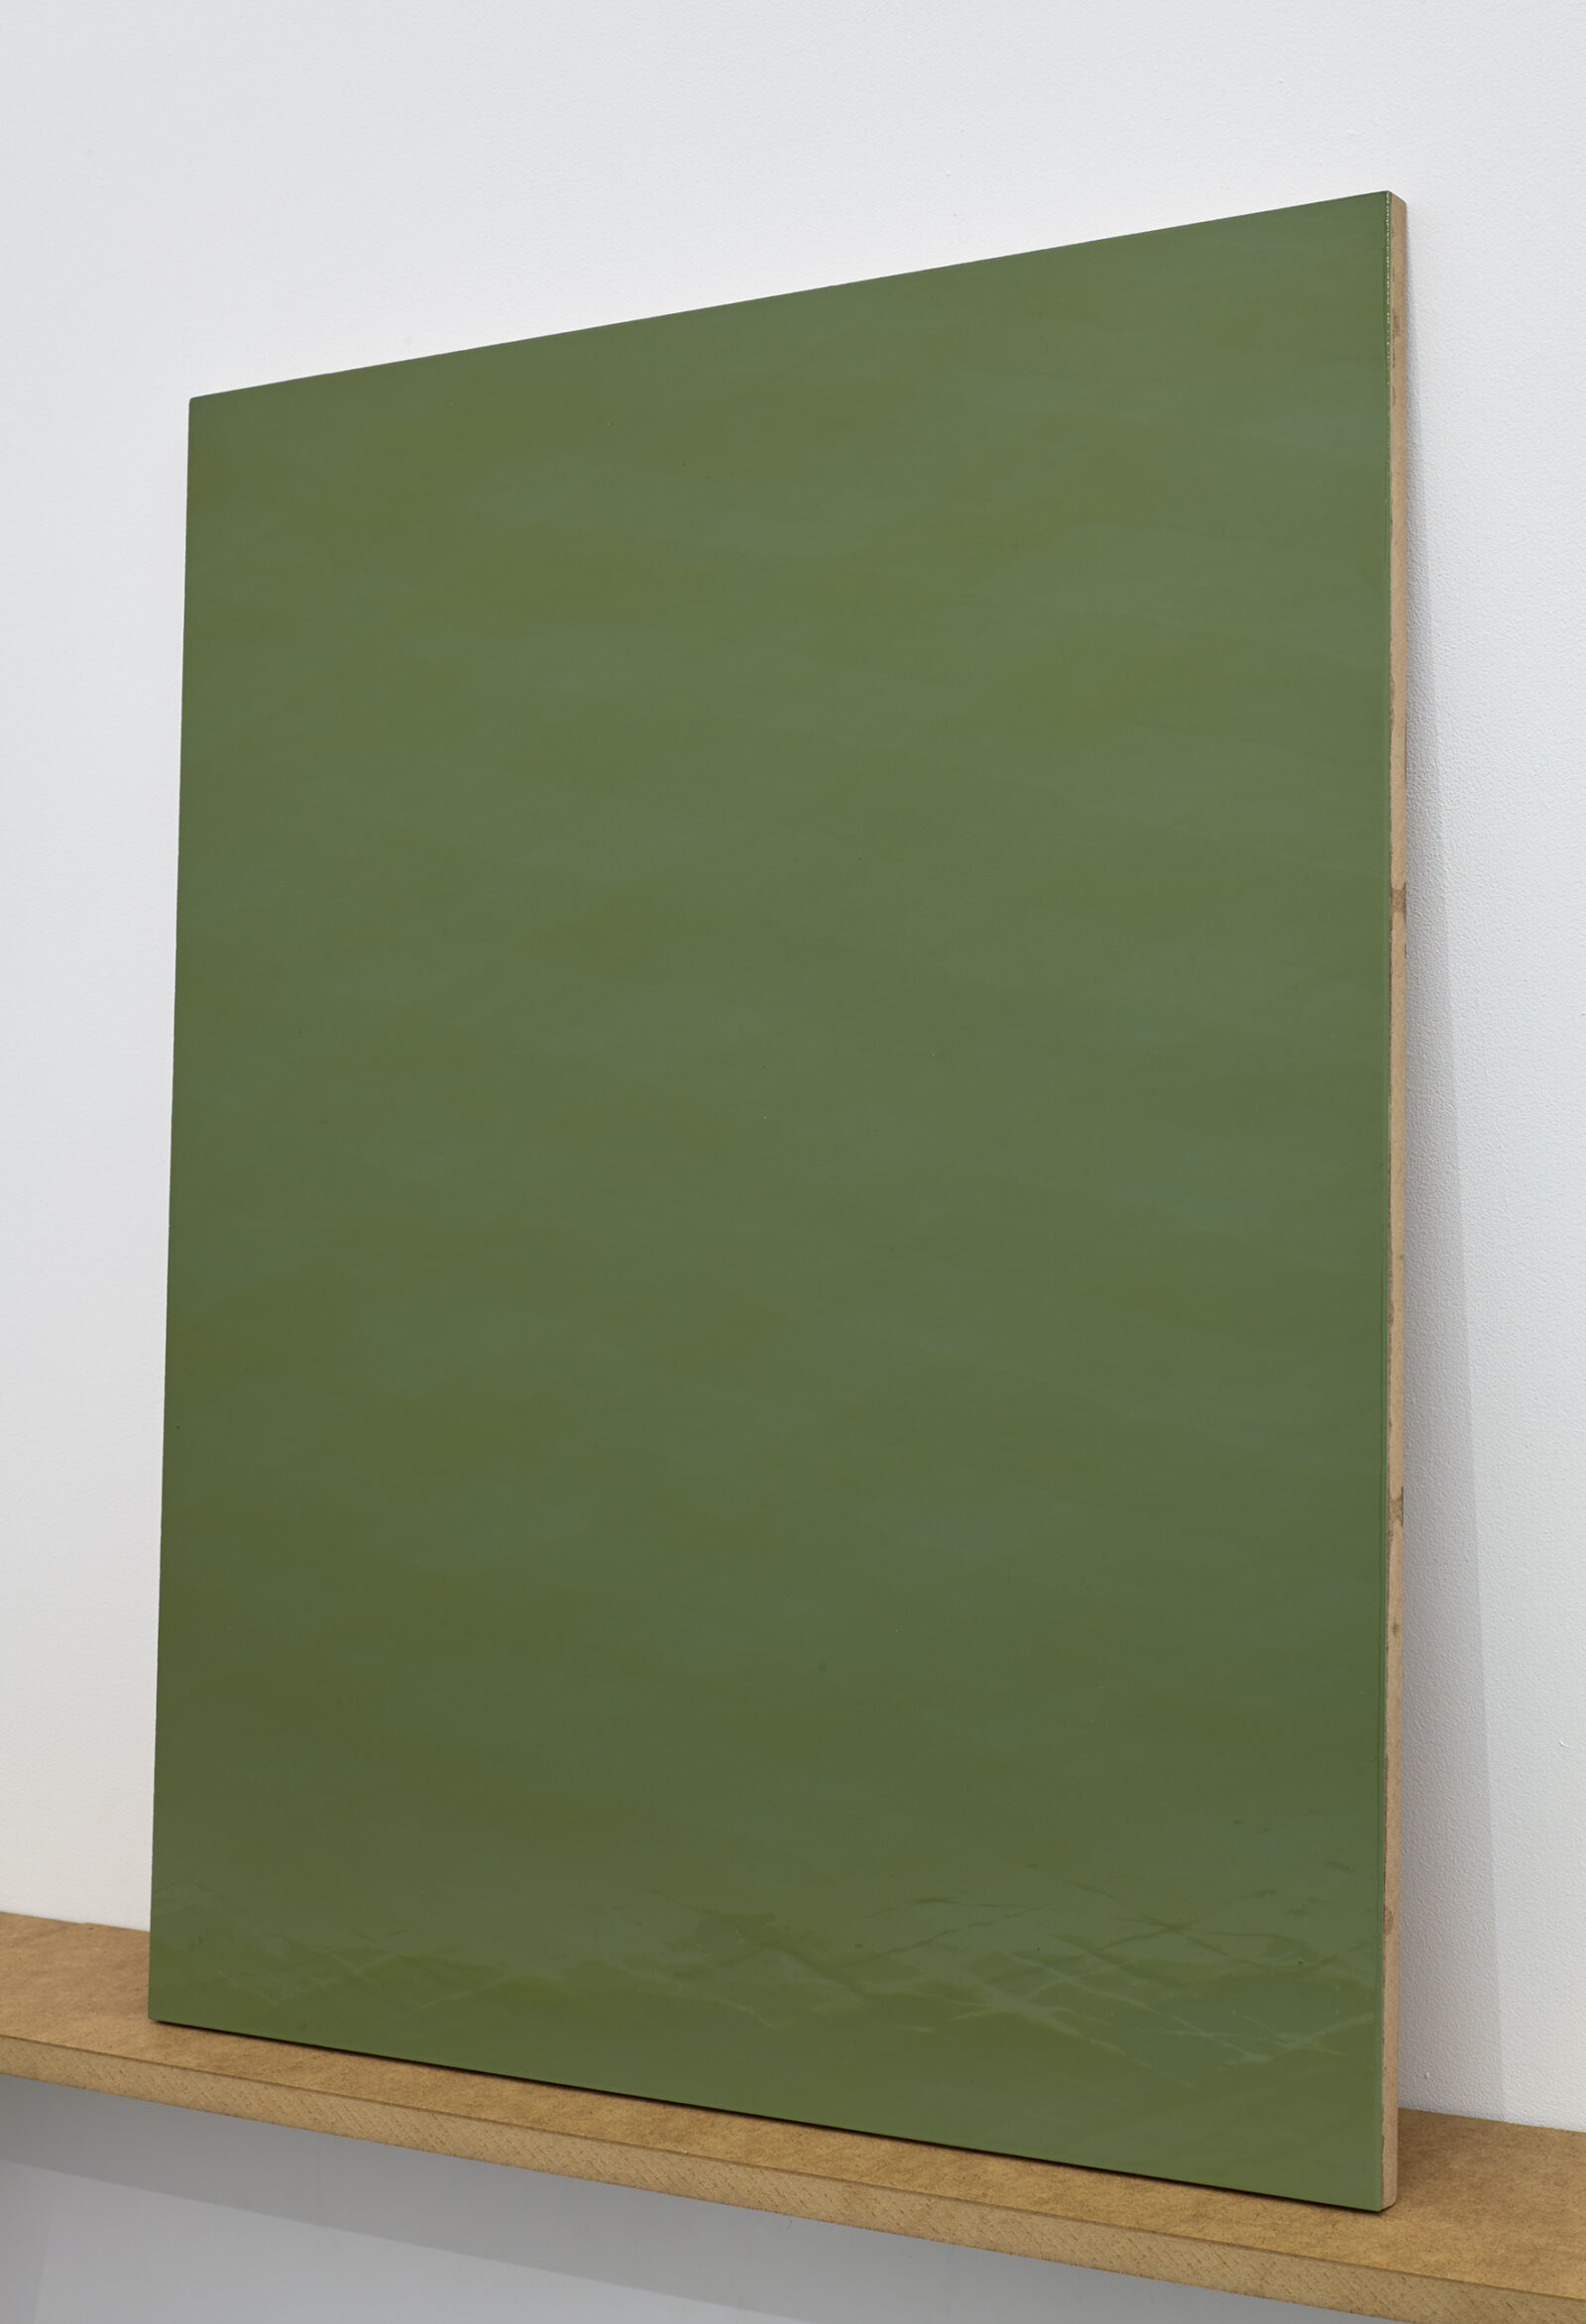 Katarzyna Przezwańska
Bez tytułu
2015
akryl, poliuretan, MDF
72 × 58 cm